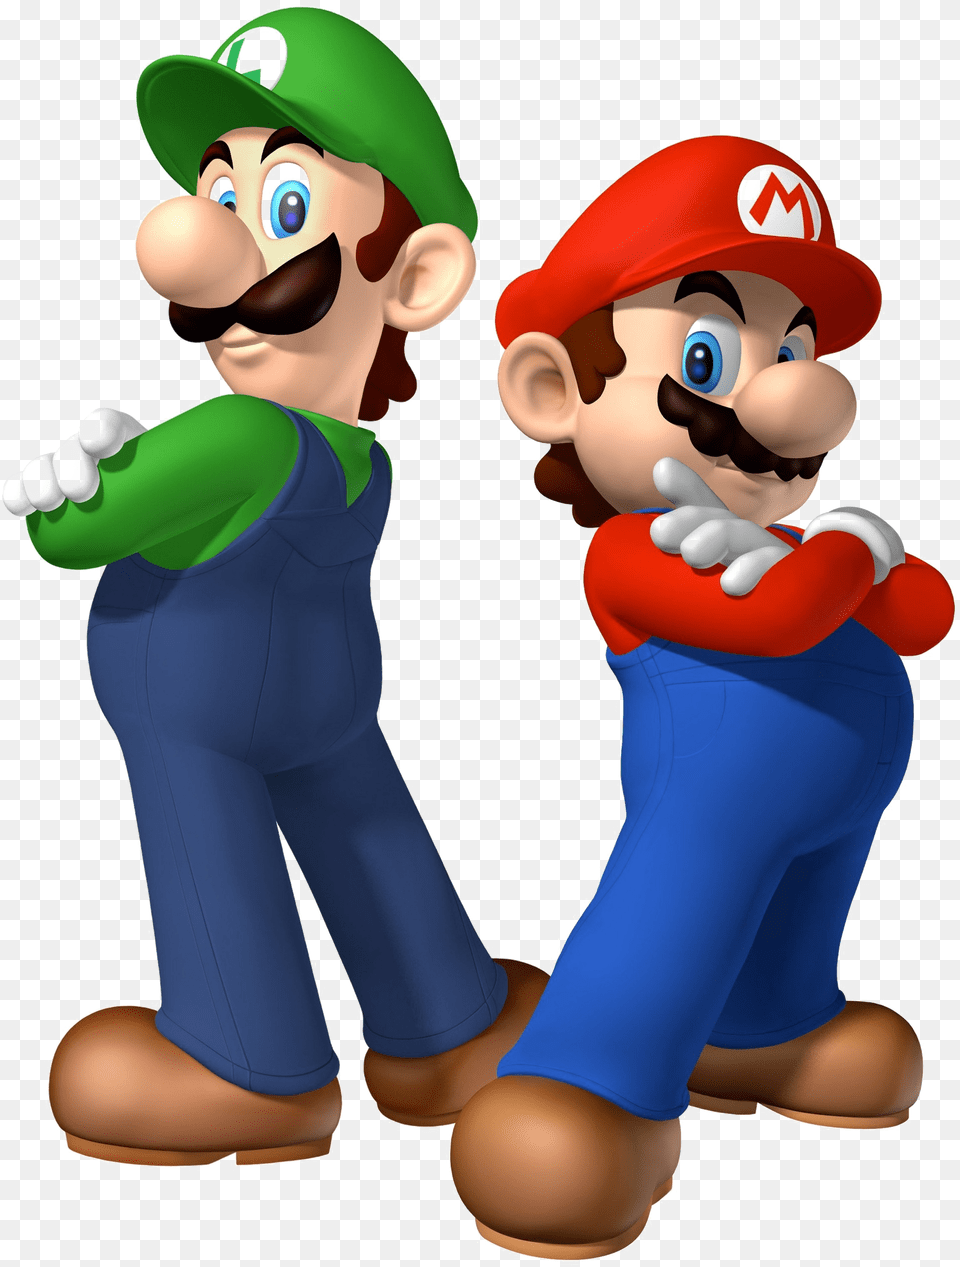 Mario And Luigi Mario Bros And Luigi, Game, Super Mario, Baby, Person Png Image